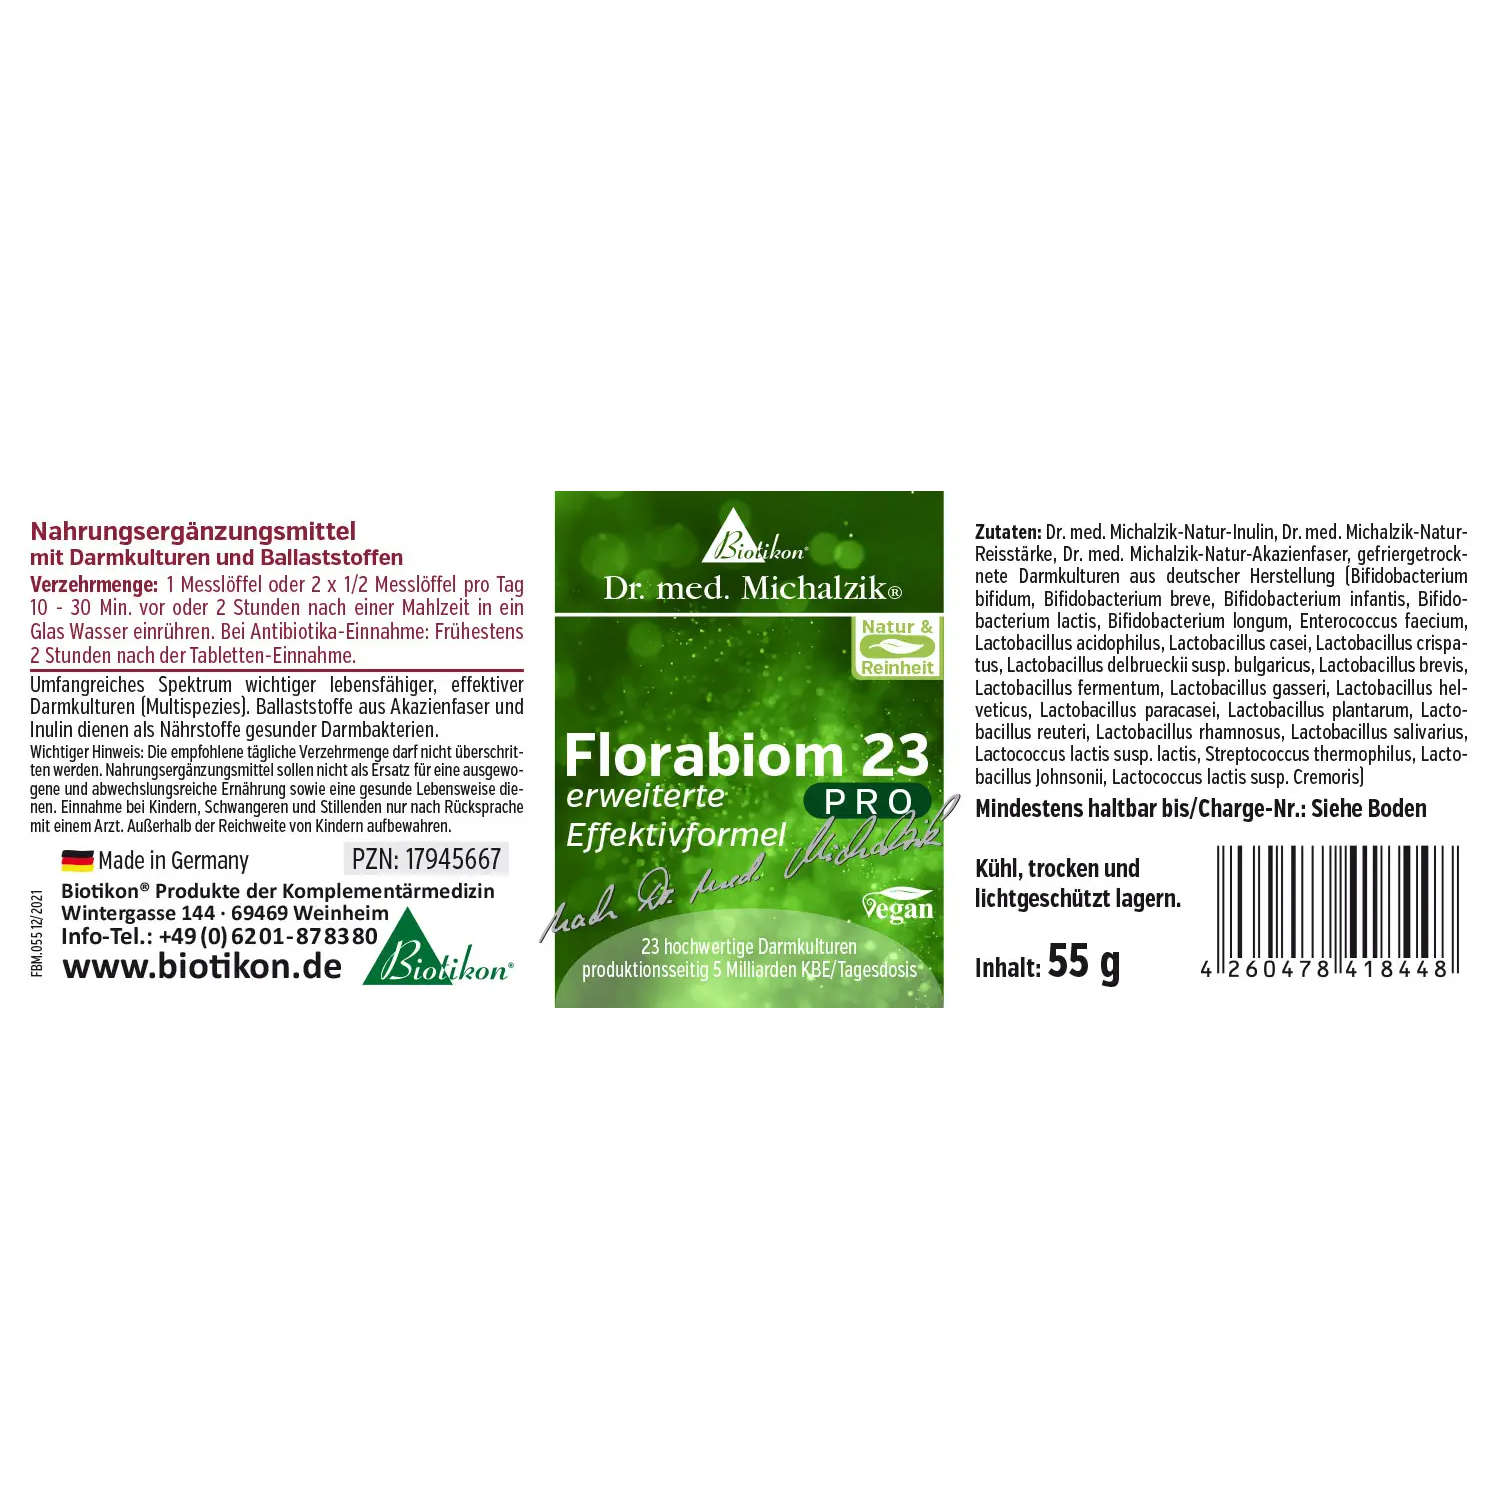 Florabiom 23 PRO von Biotikon - Etikett